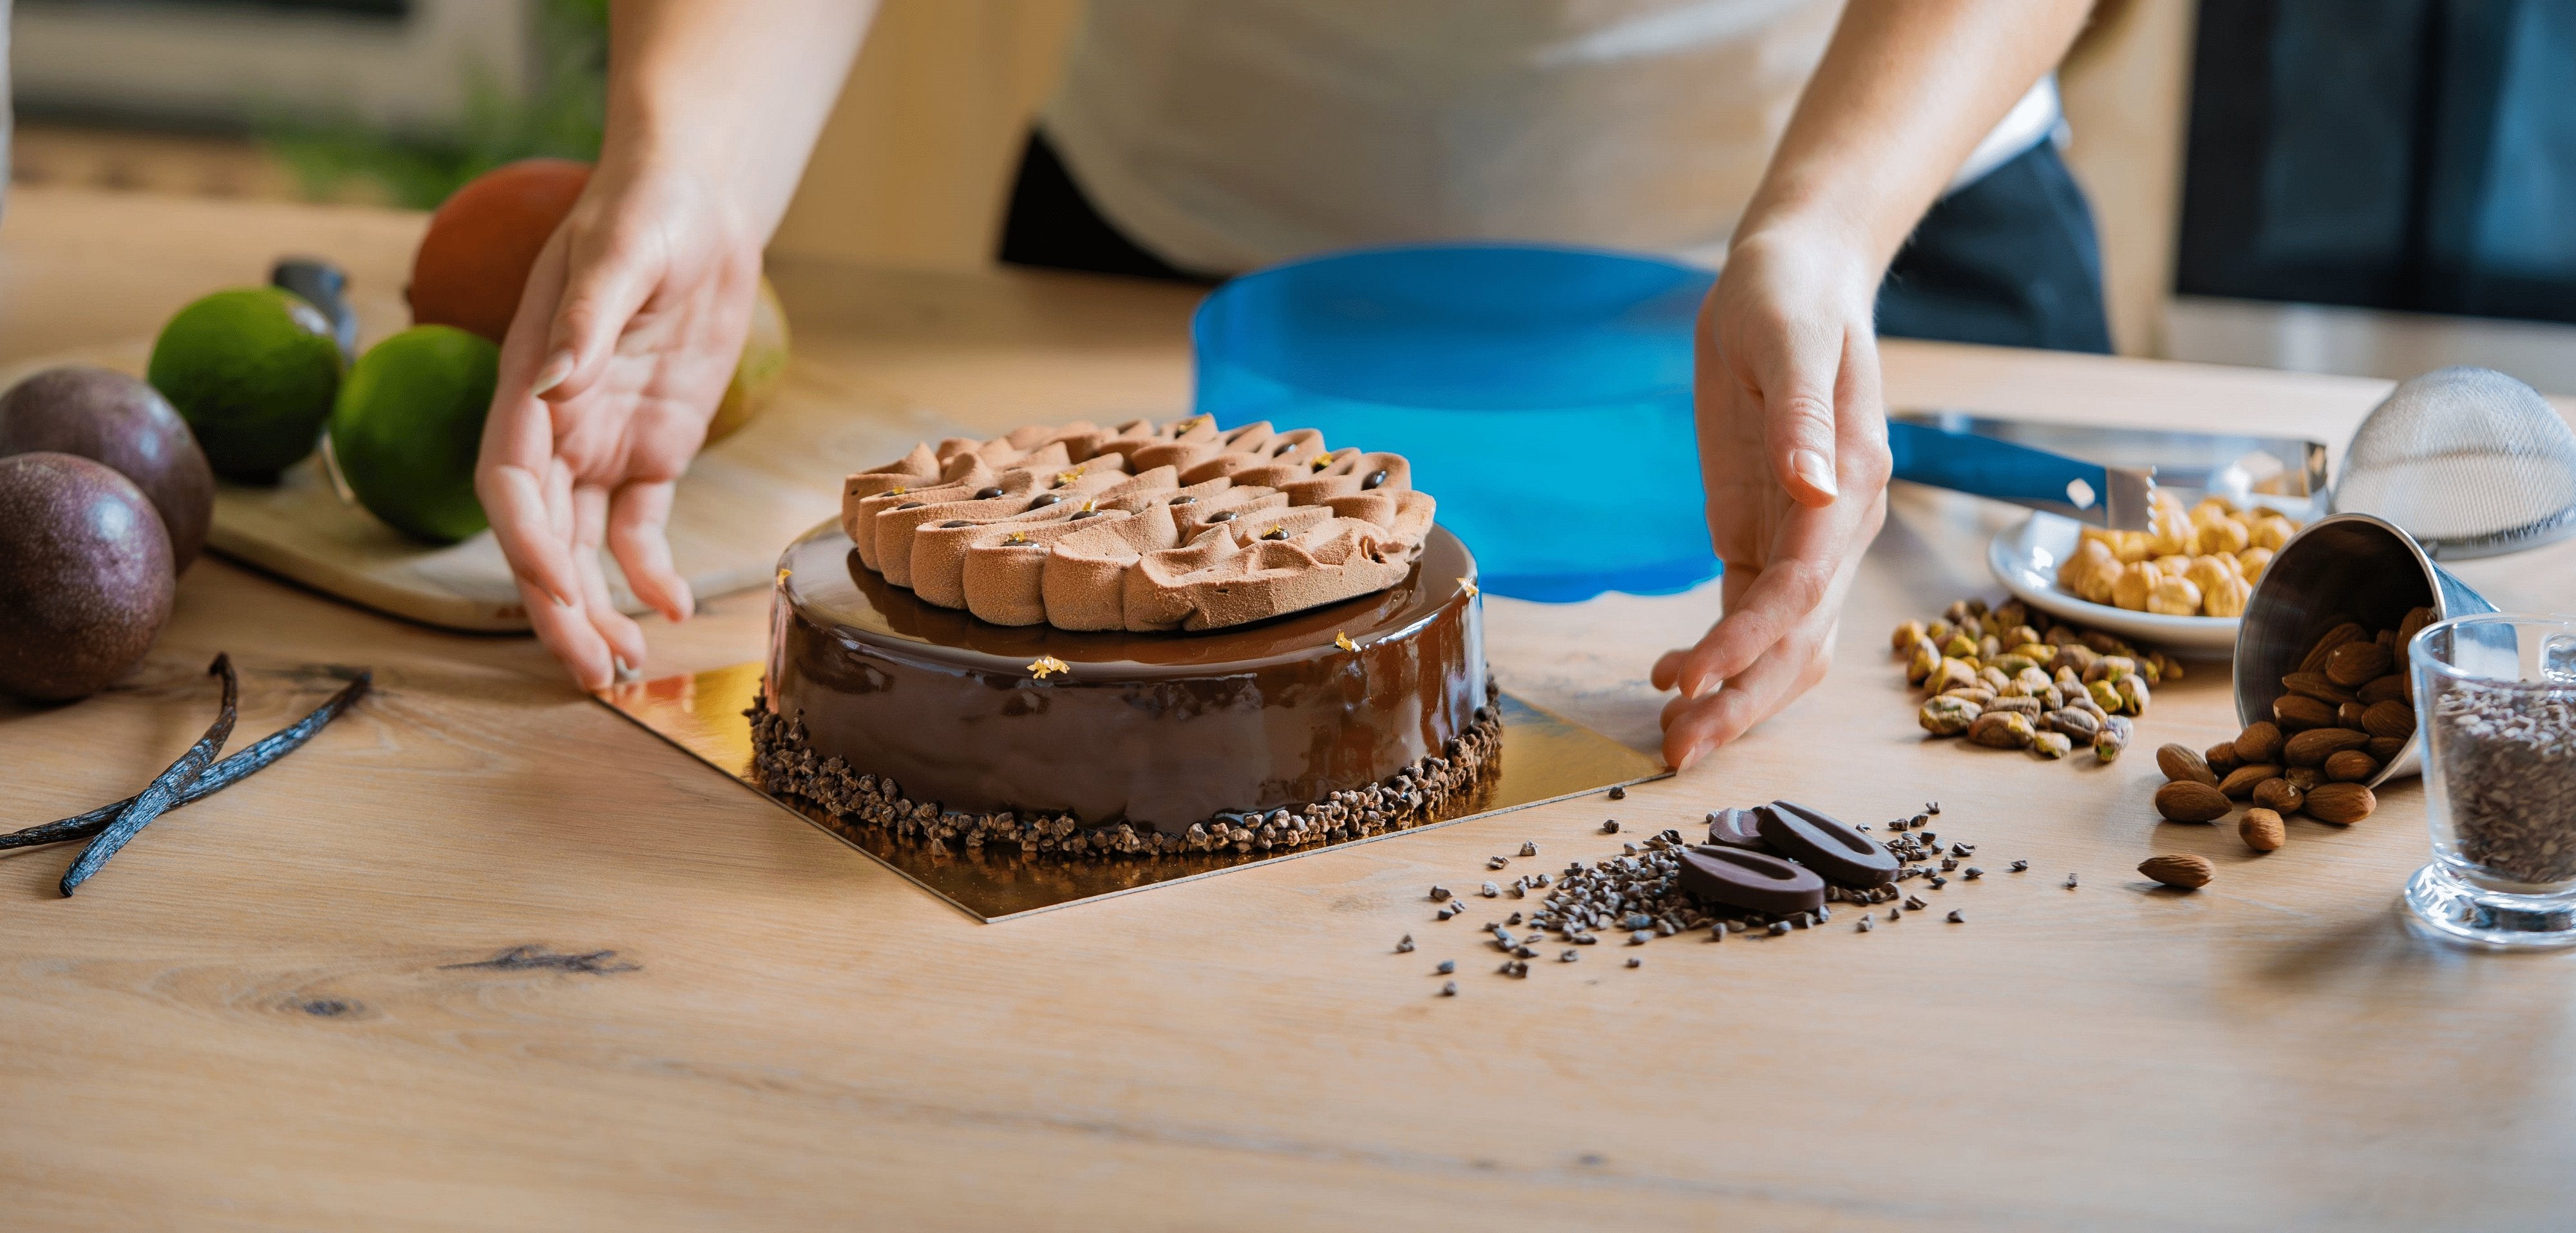 Moule silicone pro Eclipse rond 3D bombé pour gâteau pâtisserie entremet  design